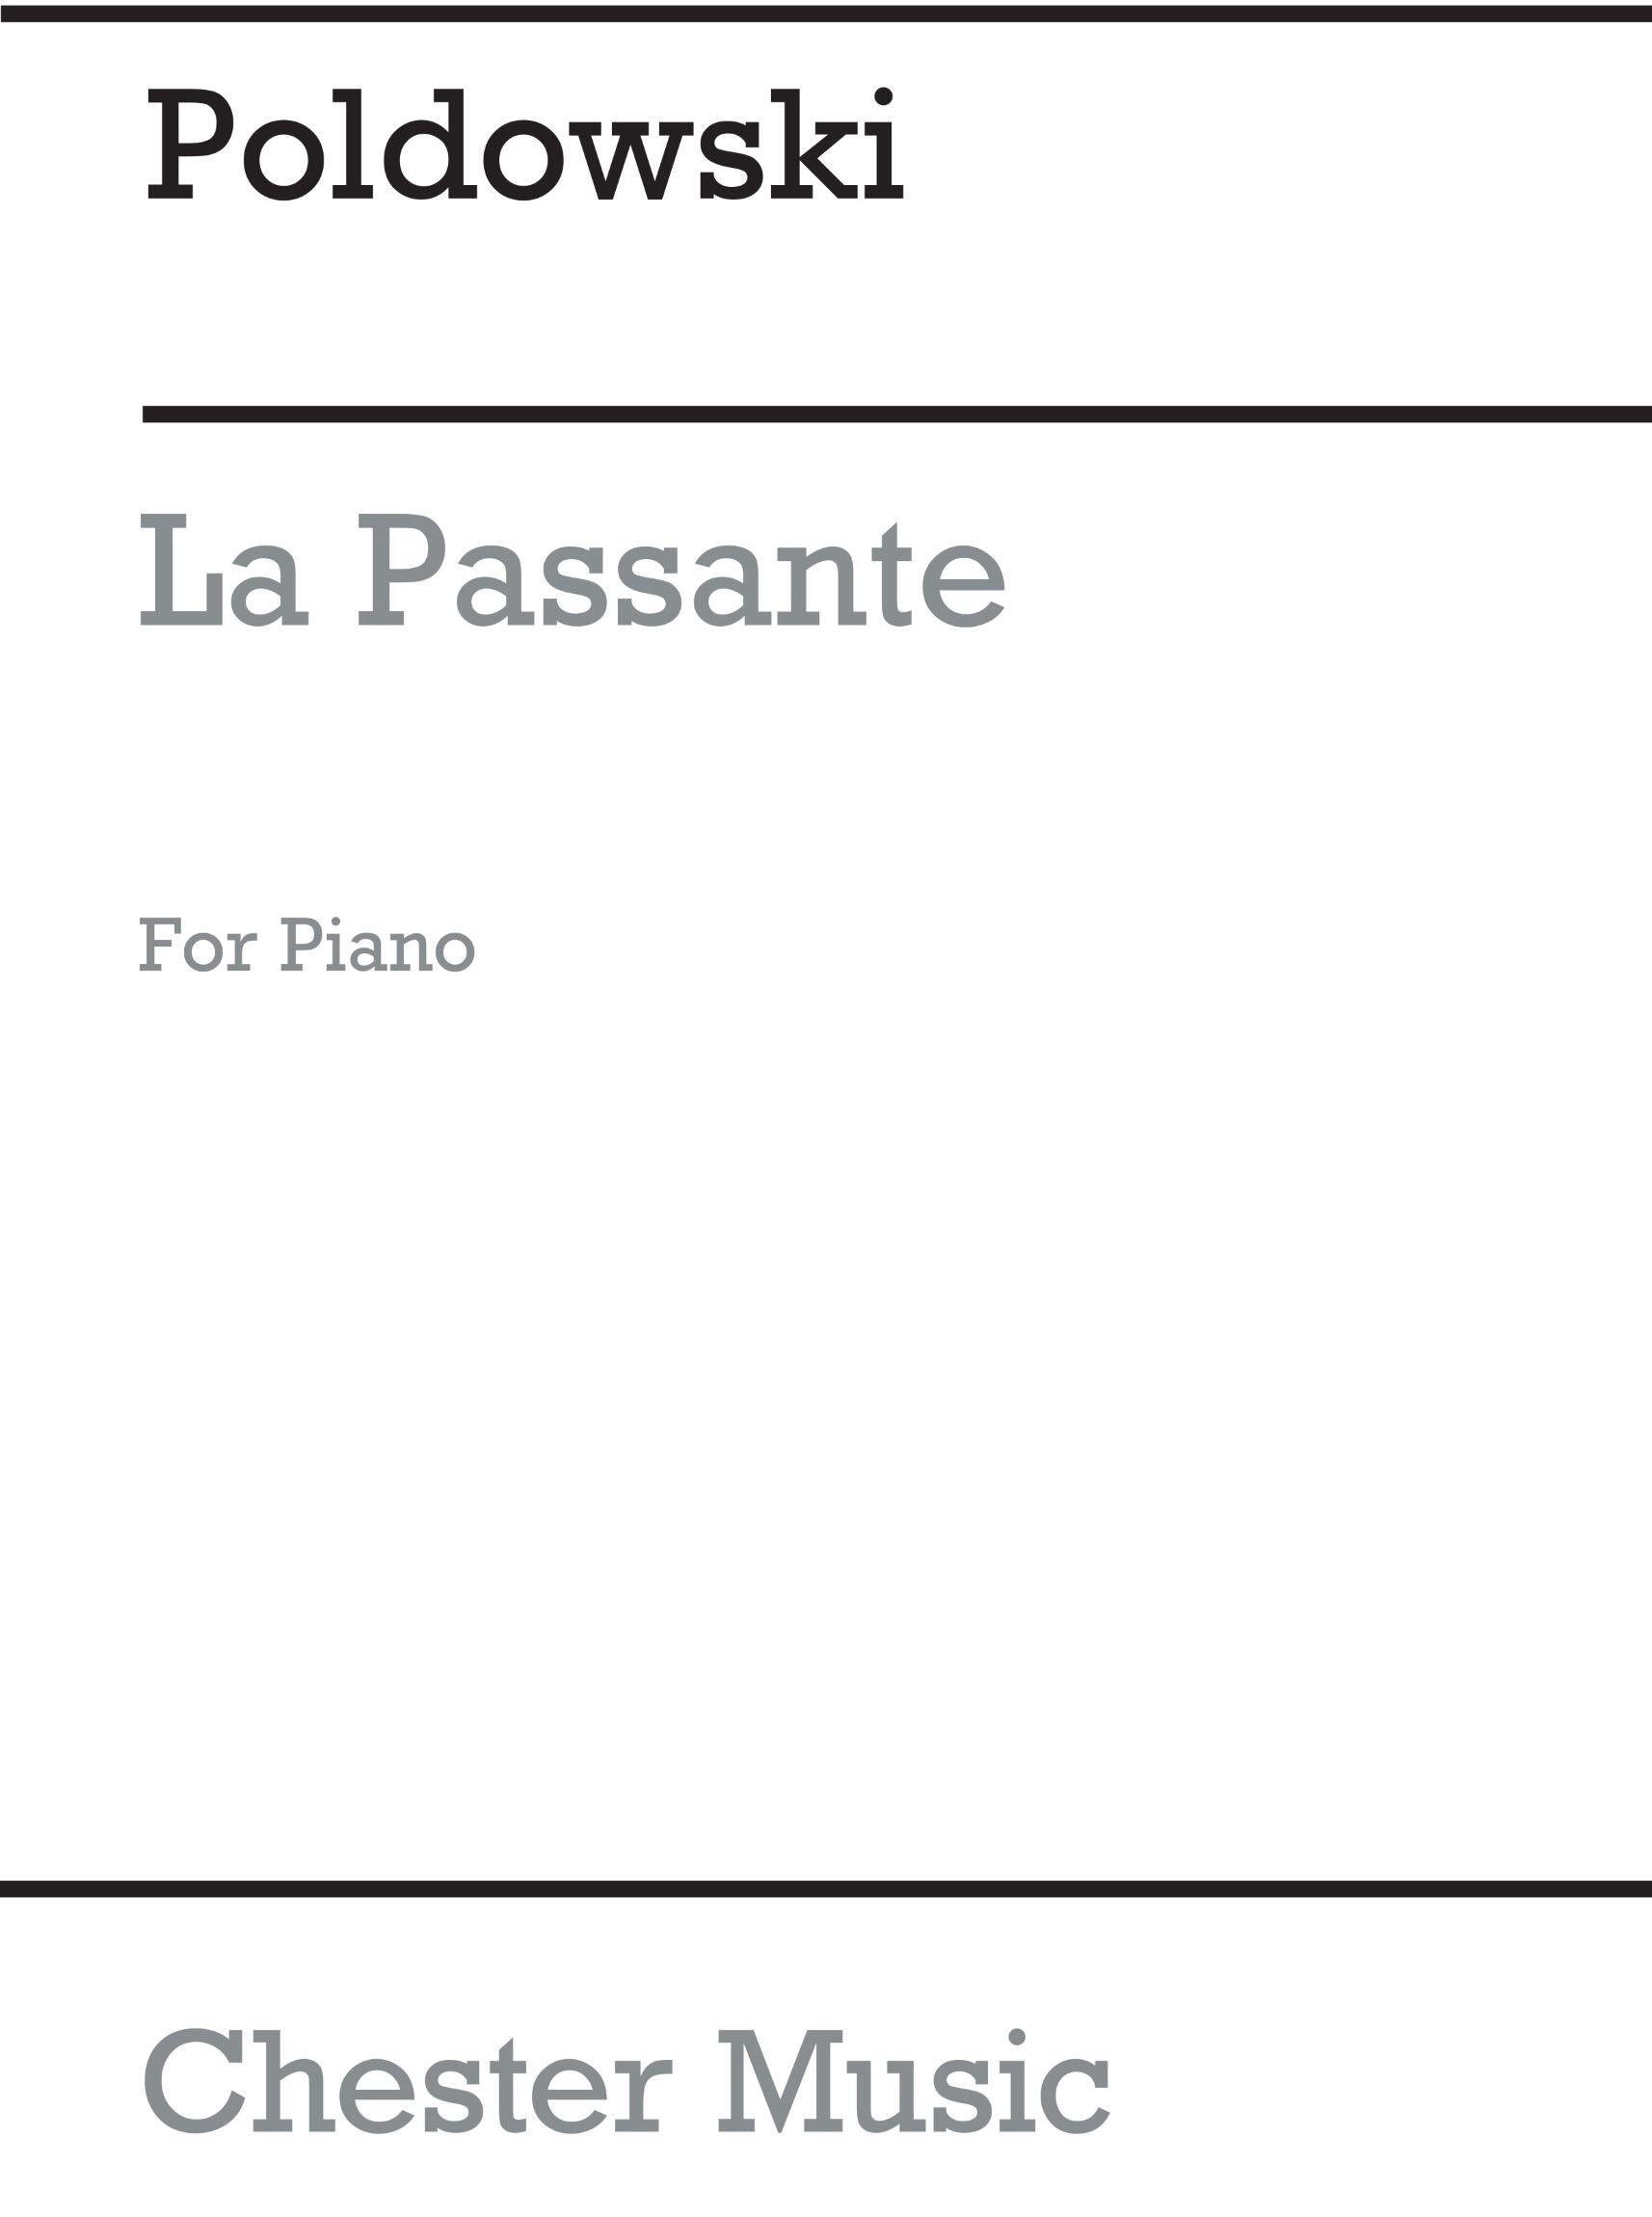 La Passante for Voice with Piano acc. : photo 1